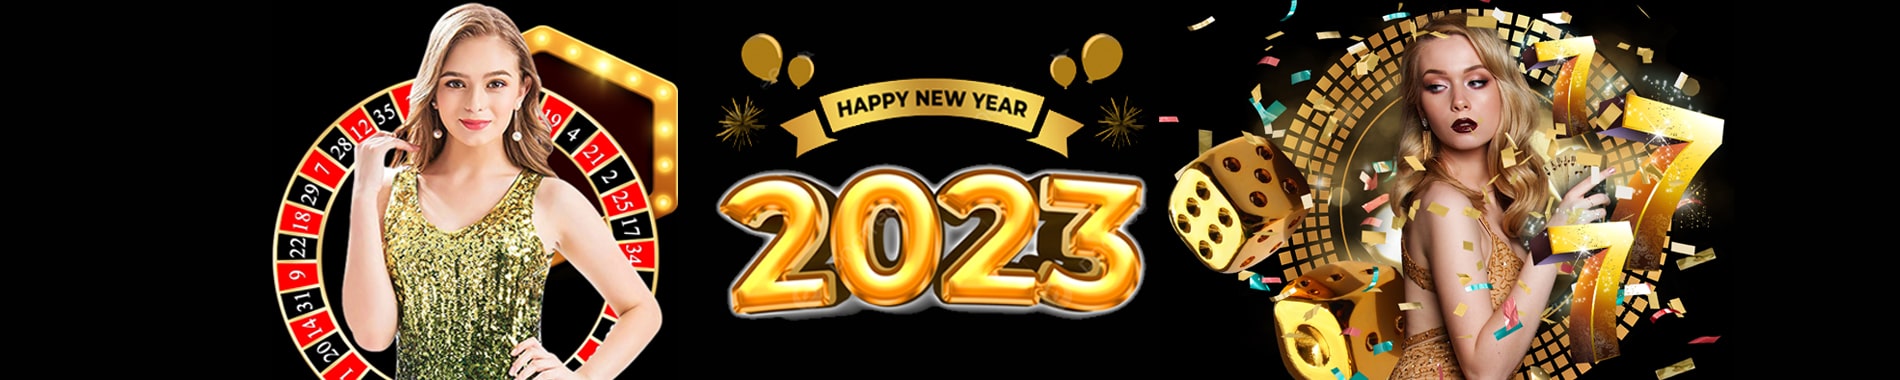 HAPPY NEW YEAR 2023 JYJ4D